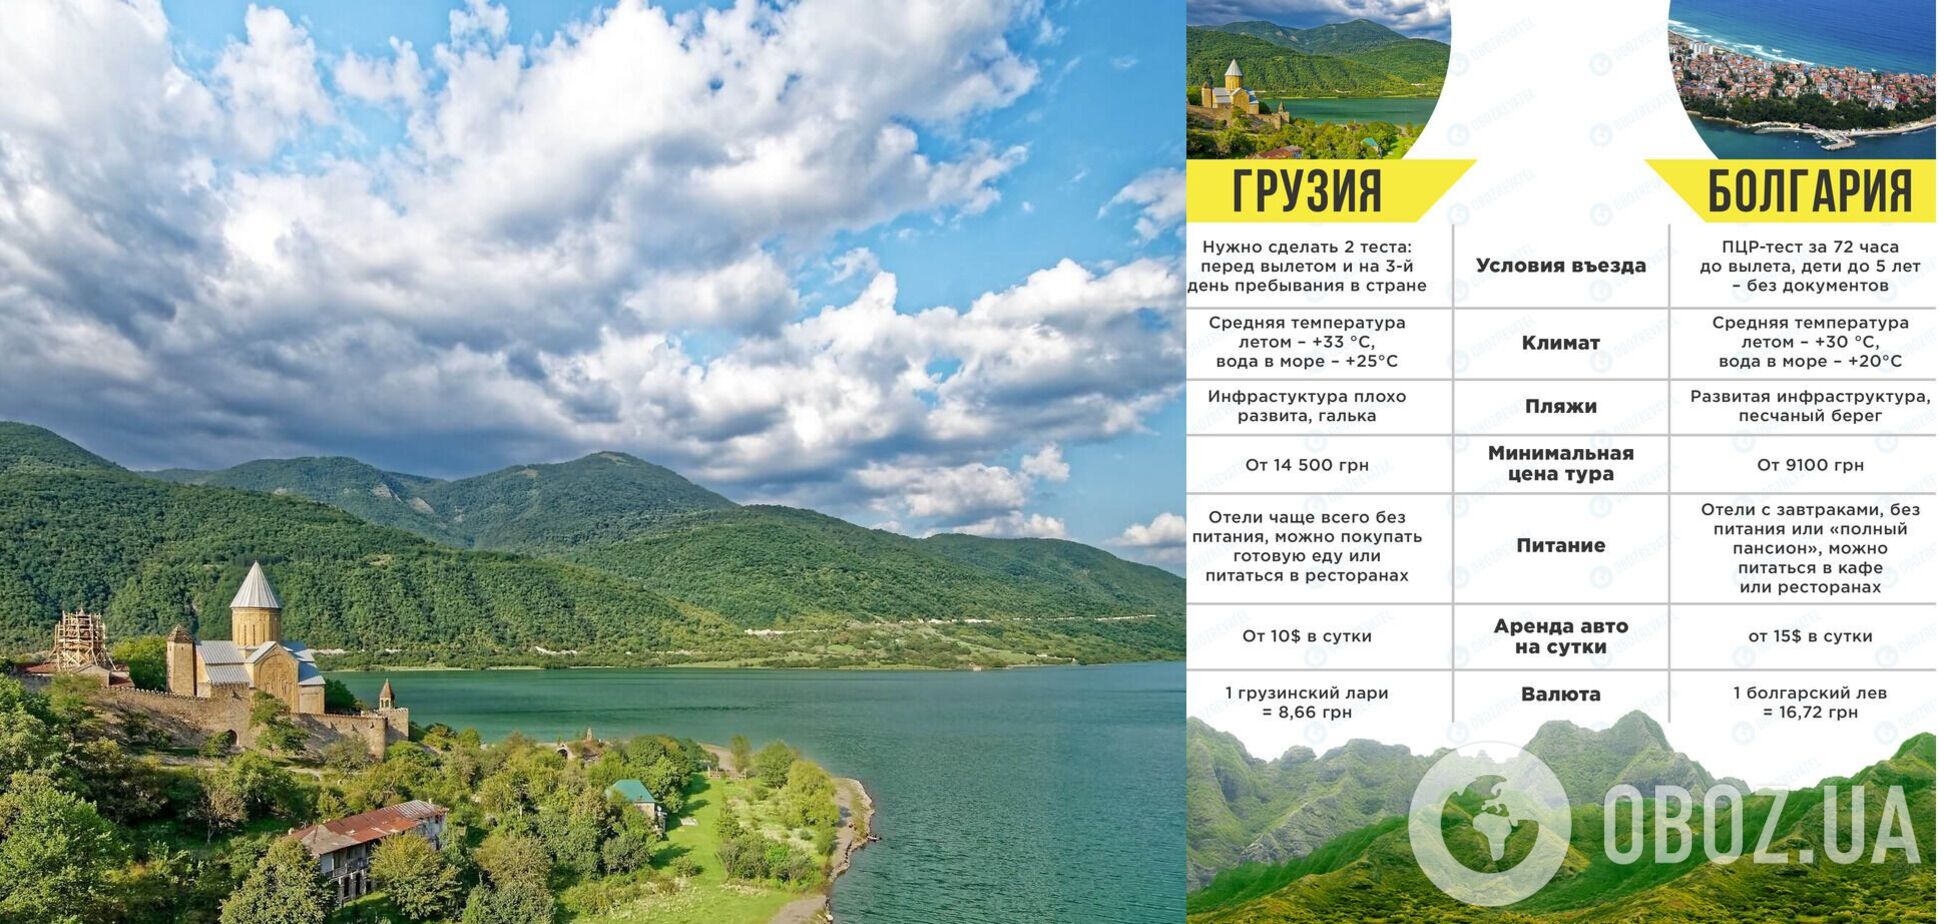 Грузія чи Болгарія: порівняння пляжів, цін на відпочинок і пам'яток. Фото